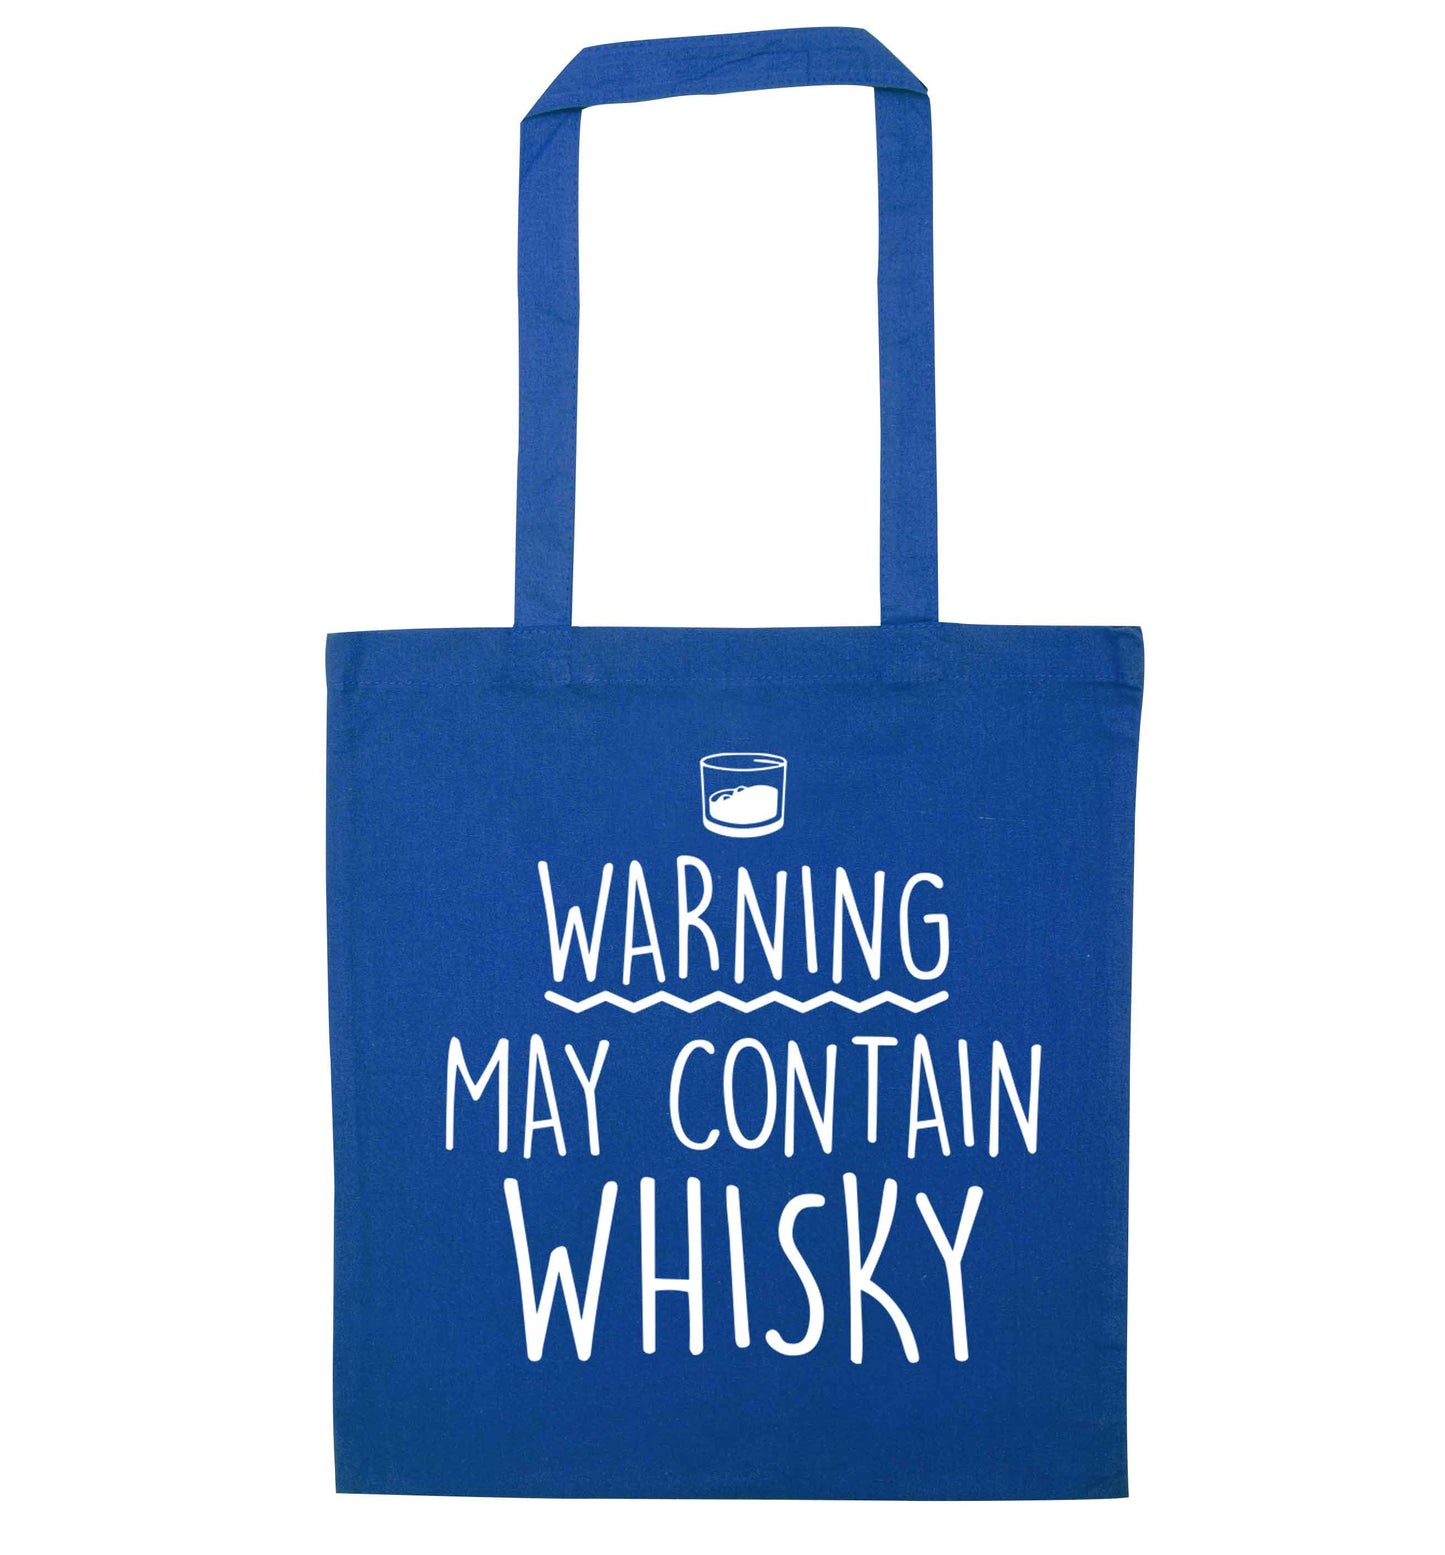 Warning may contain whisky blue tote bag